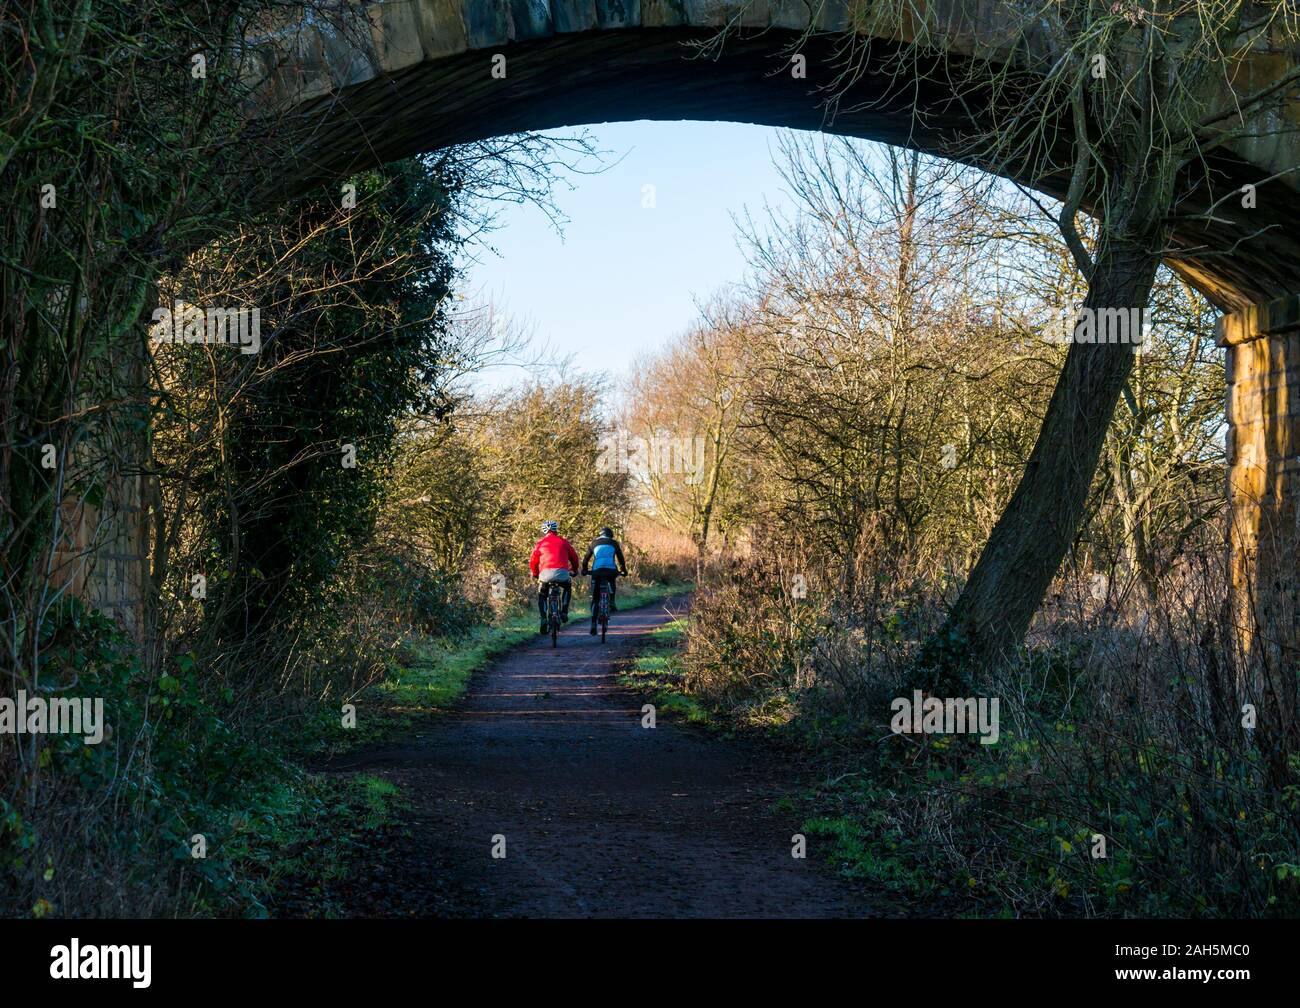 East Lothian, Ecosse, Royaume-Uni, le 25 décembre 2019. Le jour de Noël de l'exercice sur le chemin de fer à Haddington Longniddry avec un couple riding bicycles vu à travers l'arche d'un pont Banque D'Images